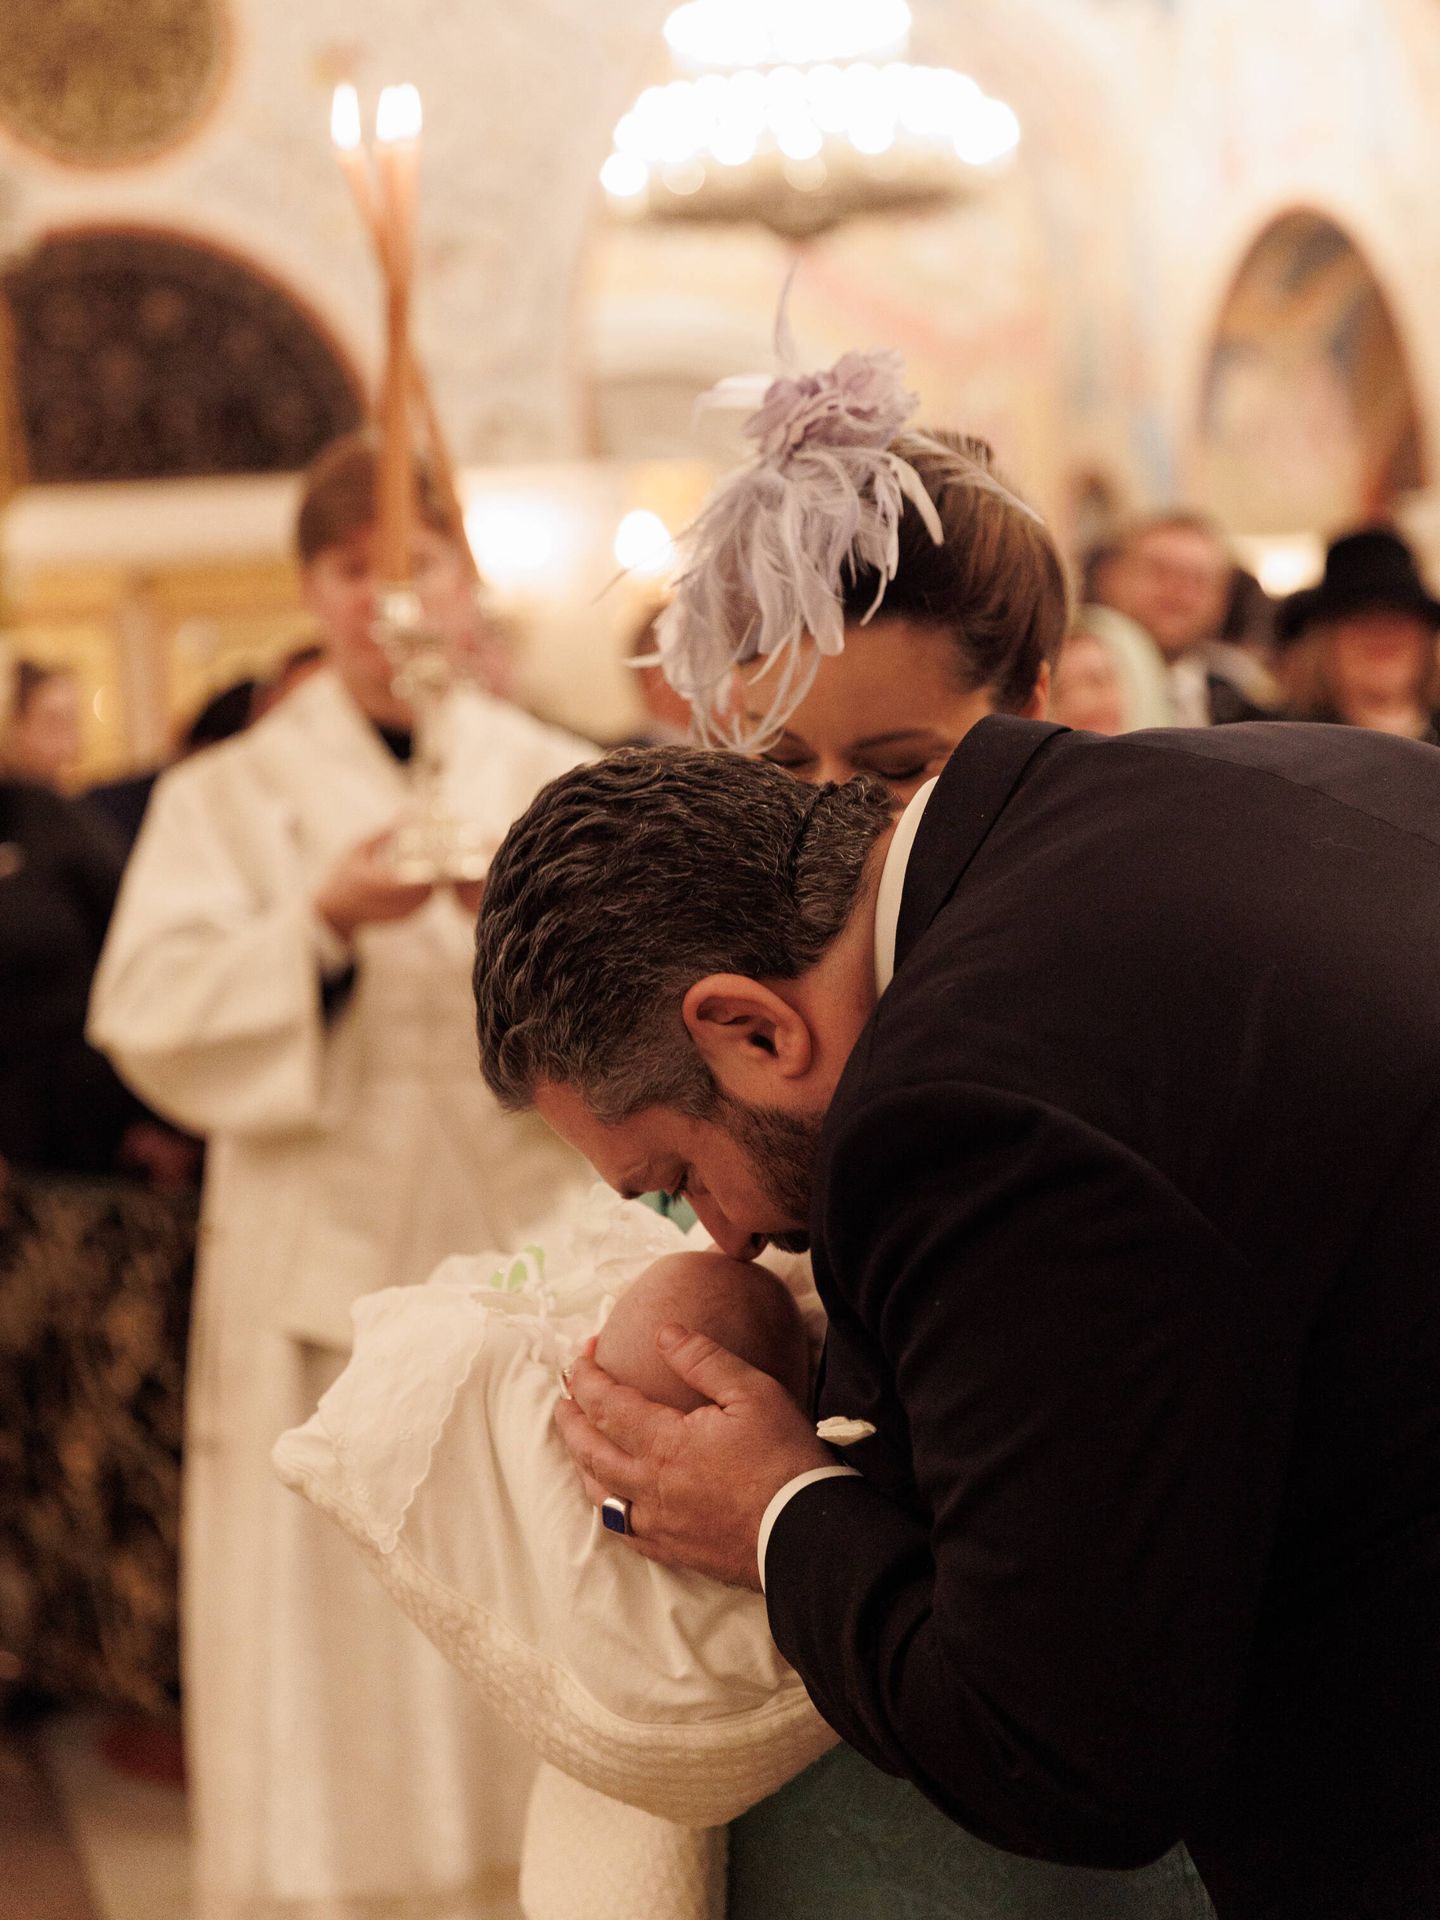 El gran duque, besando a su hijo durante el bautizo. (Cortesía)